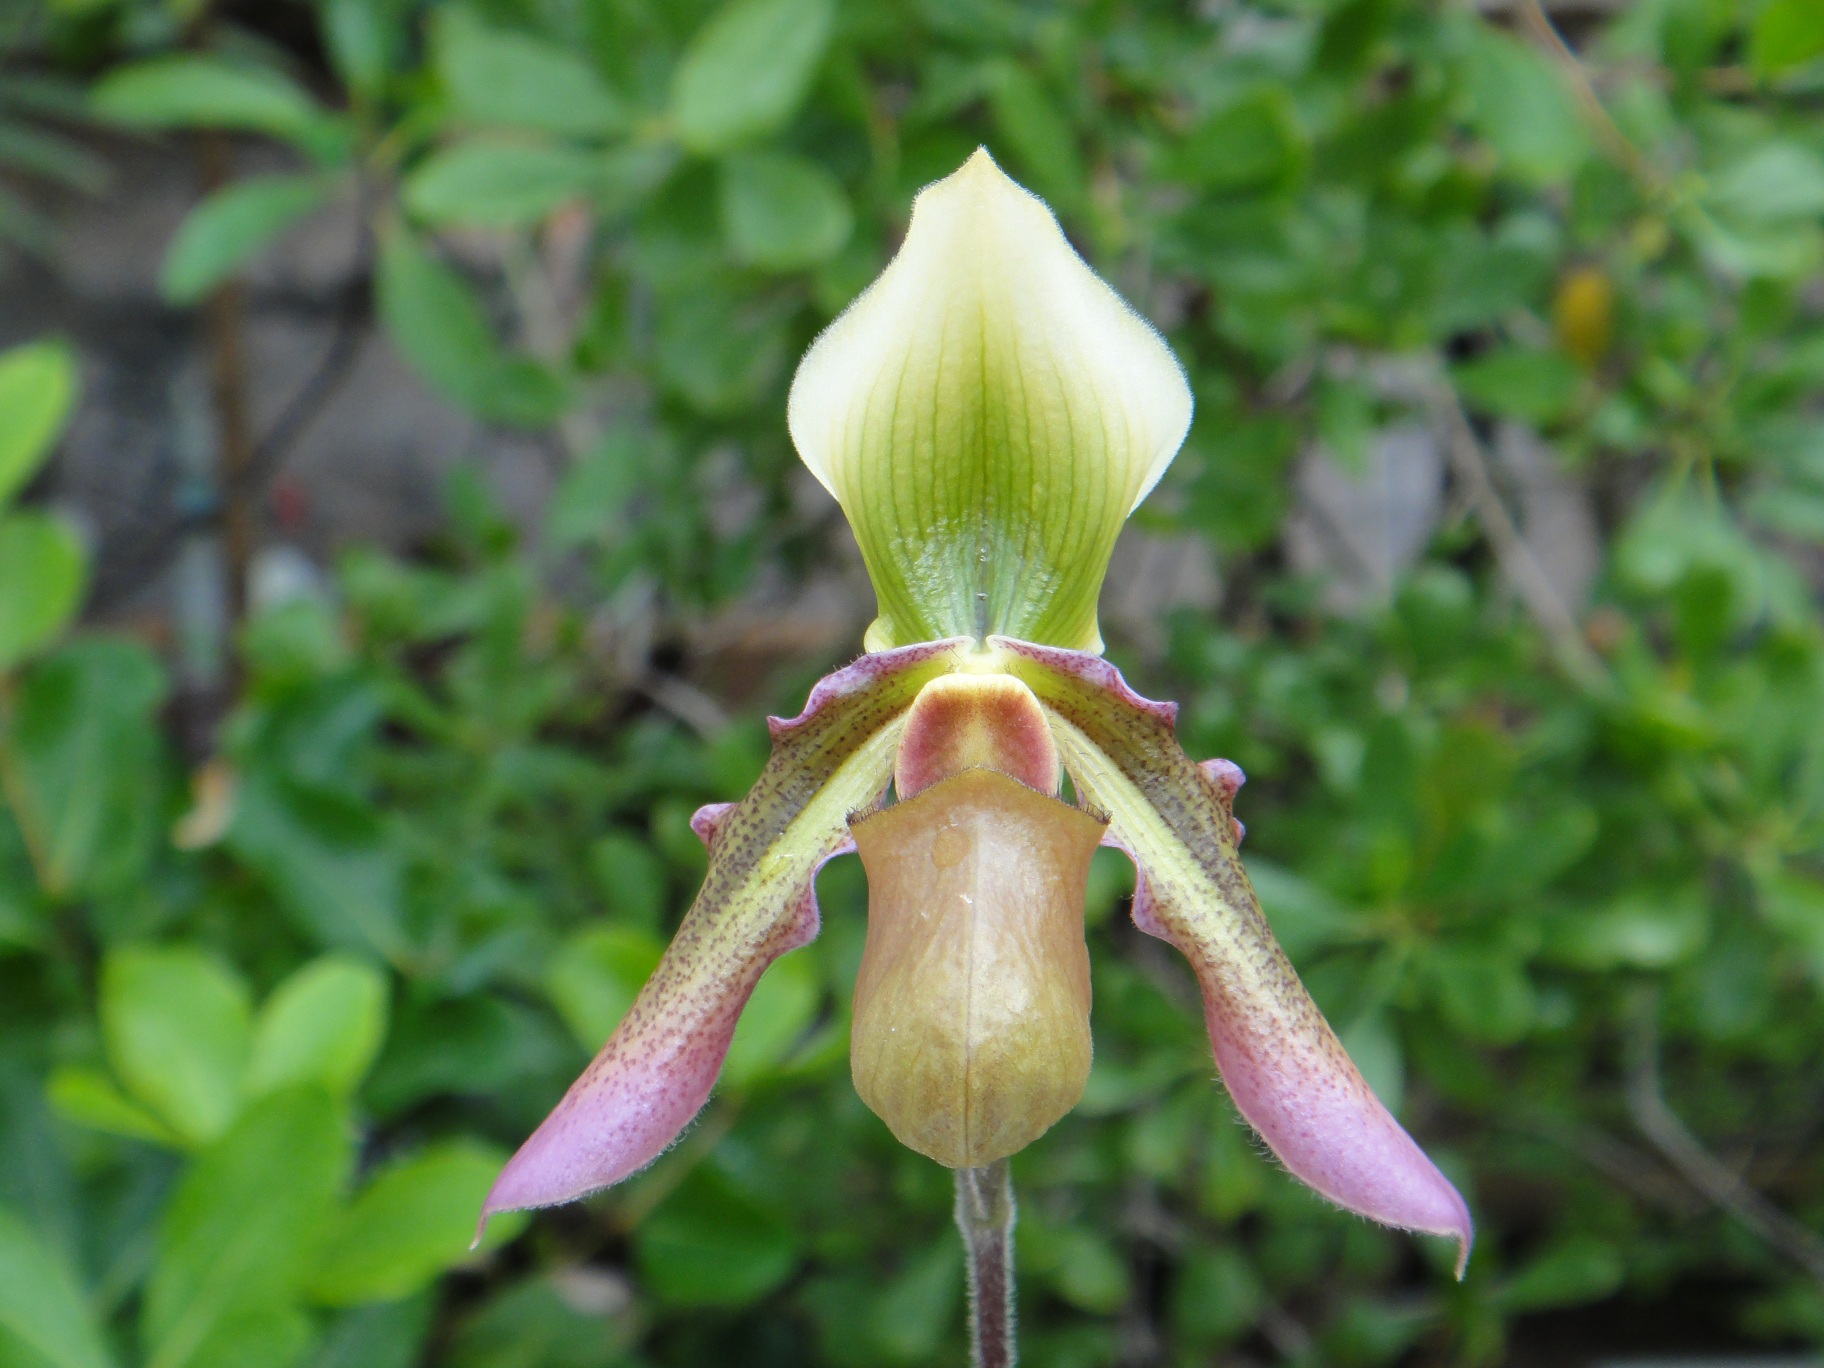 http://orchids.la.coocan.jp/Paphiopedilum/Paphiopedilum%20hookerae/DSC02546.JPG